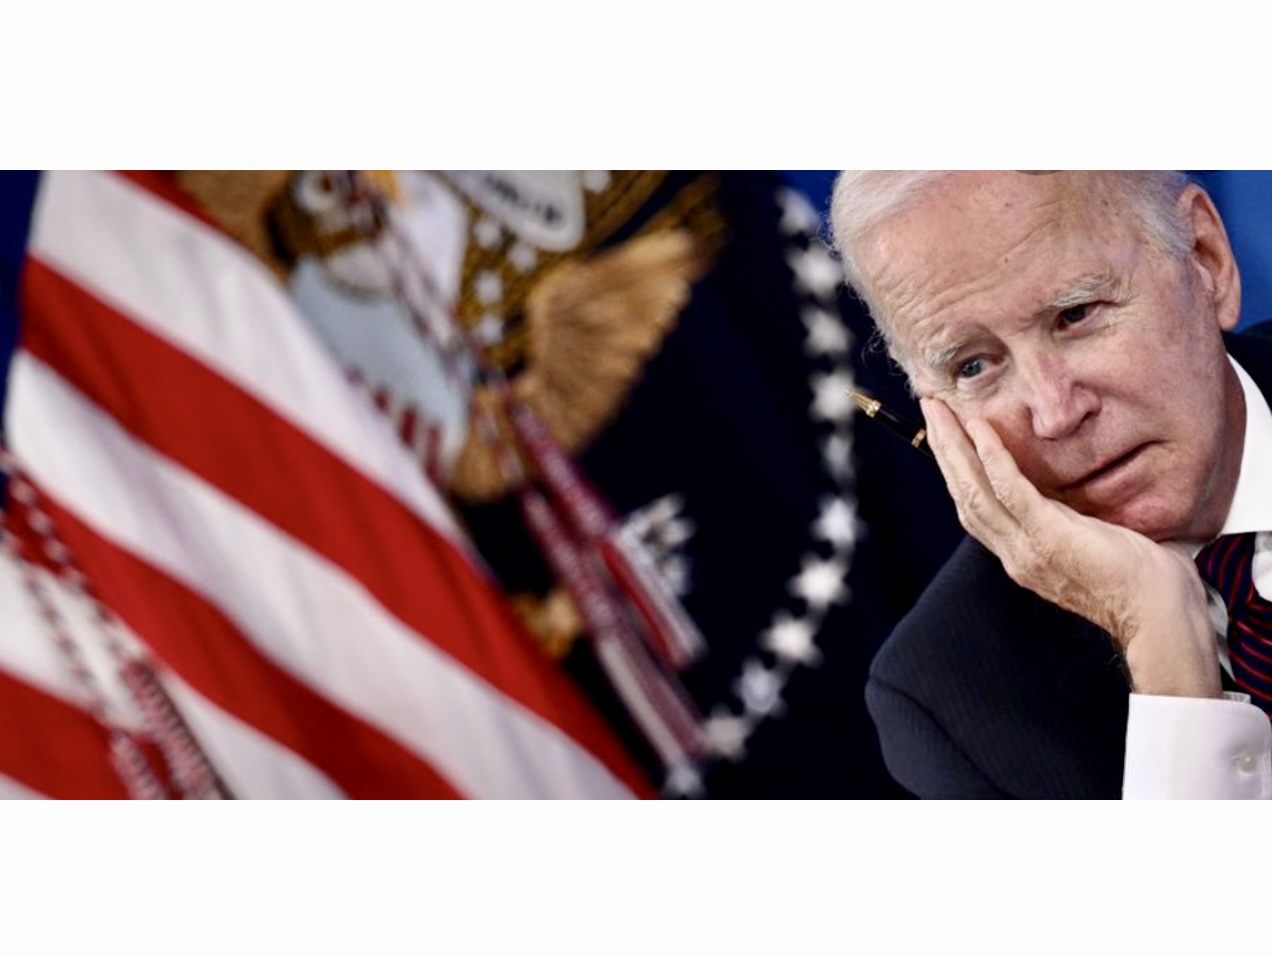 Joe Biden, figure de la politique américaine, est assis devant un drapeau américain.